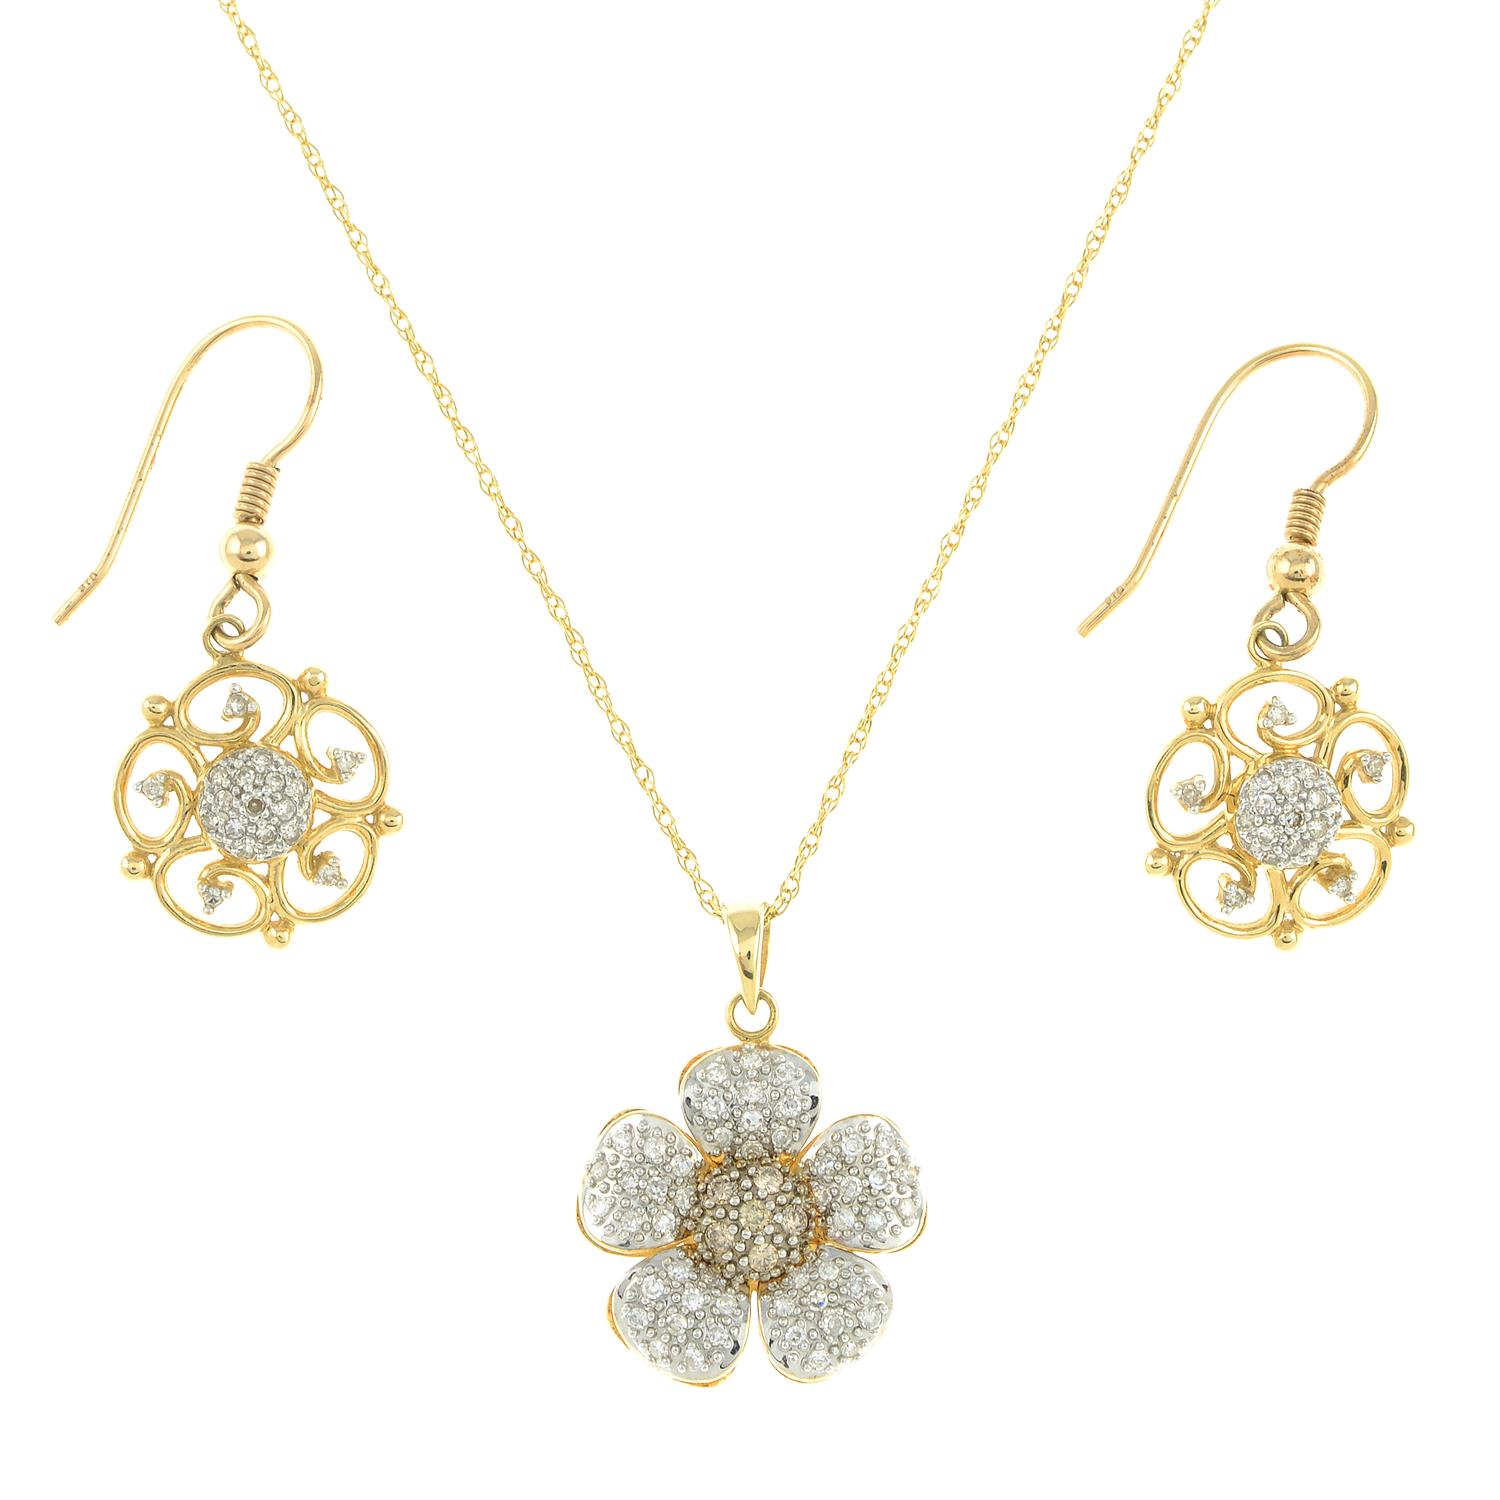 Diamond necklace & earrings